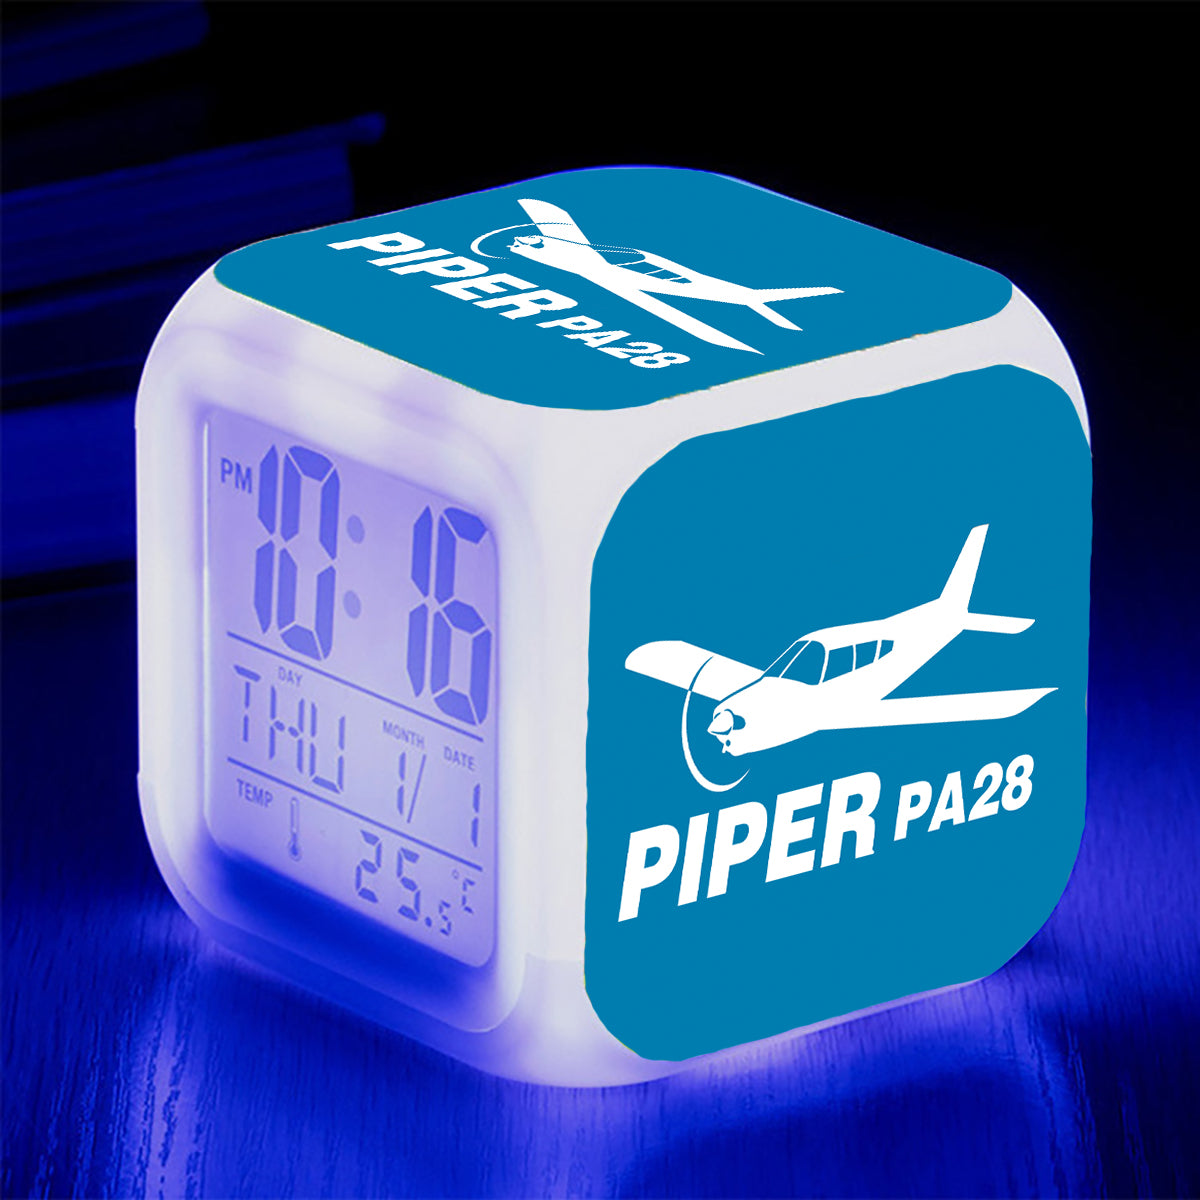 The Piper PA28 Designed "7 Colour" Digital Alarm Clock